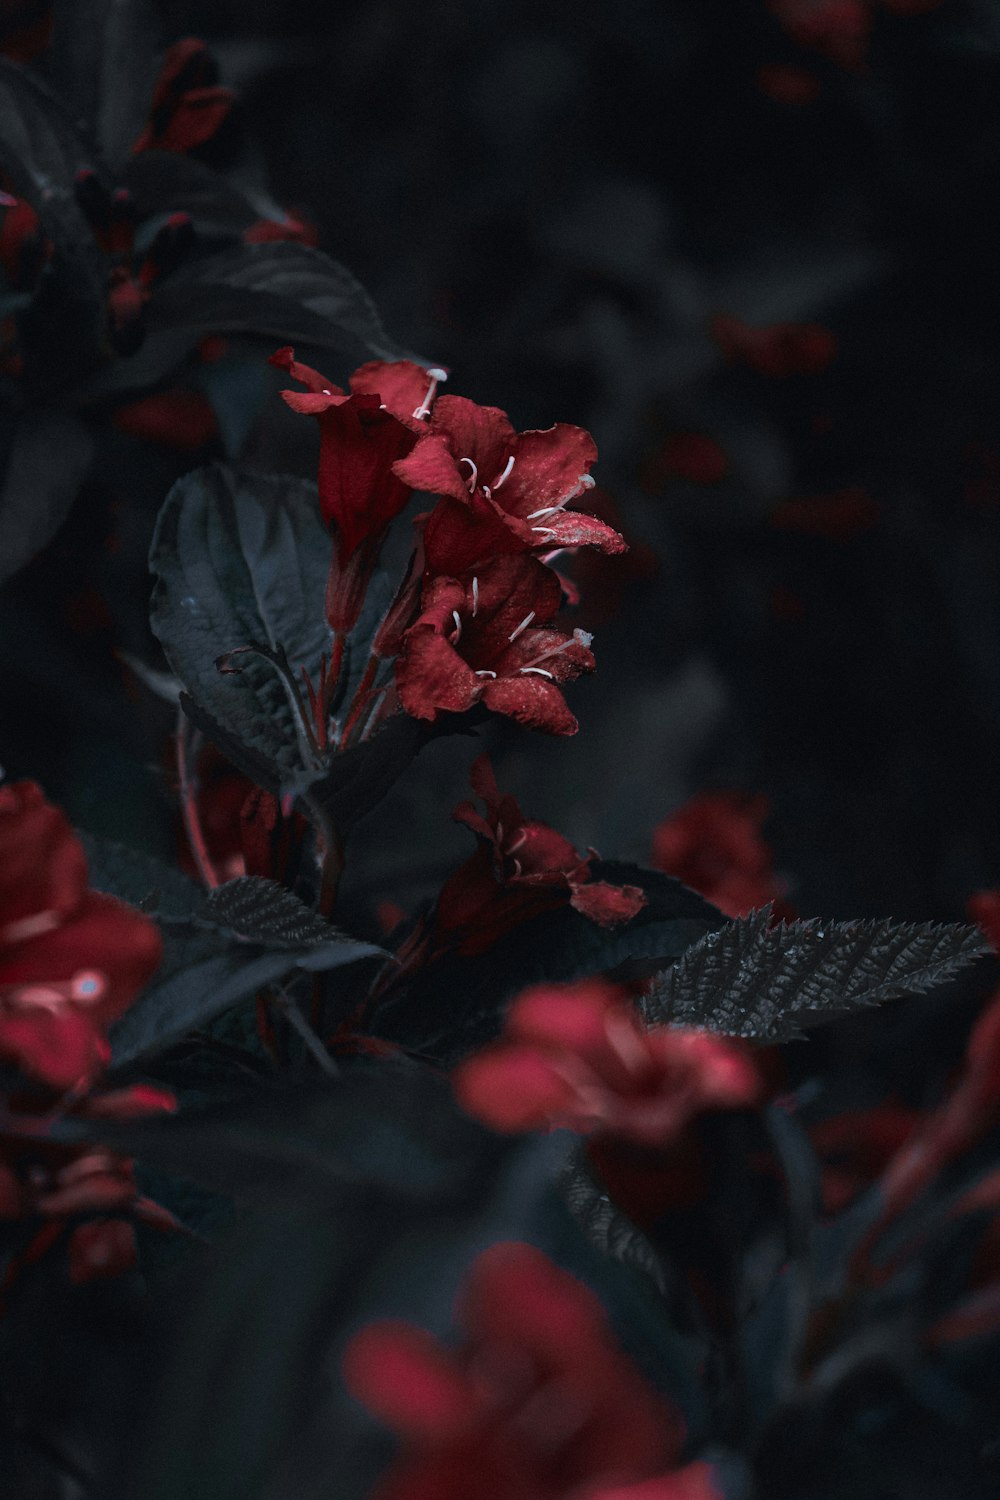 틸트 시프트 렌즈의 붉은 꽃